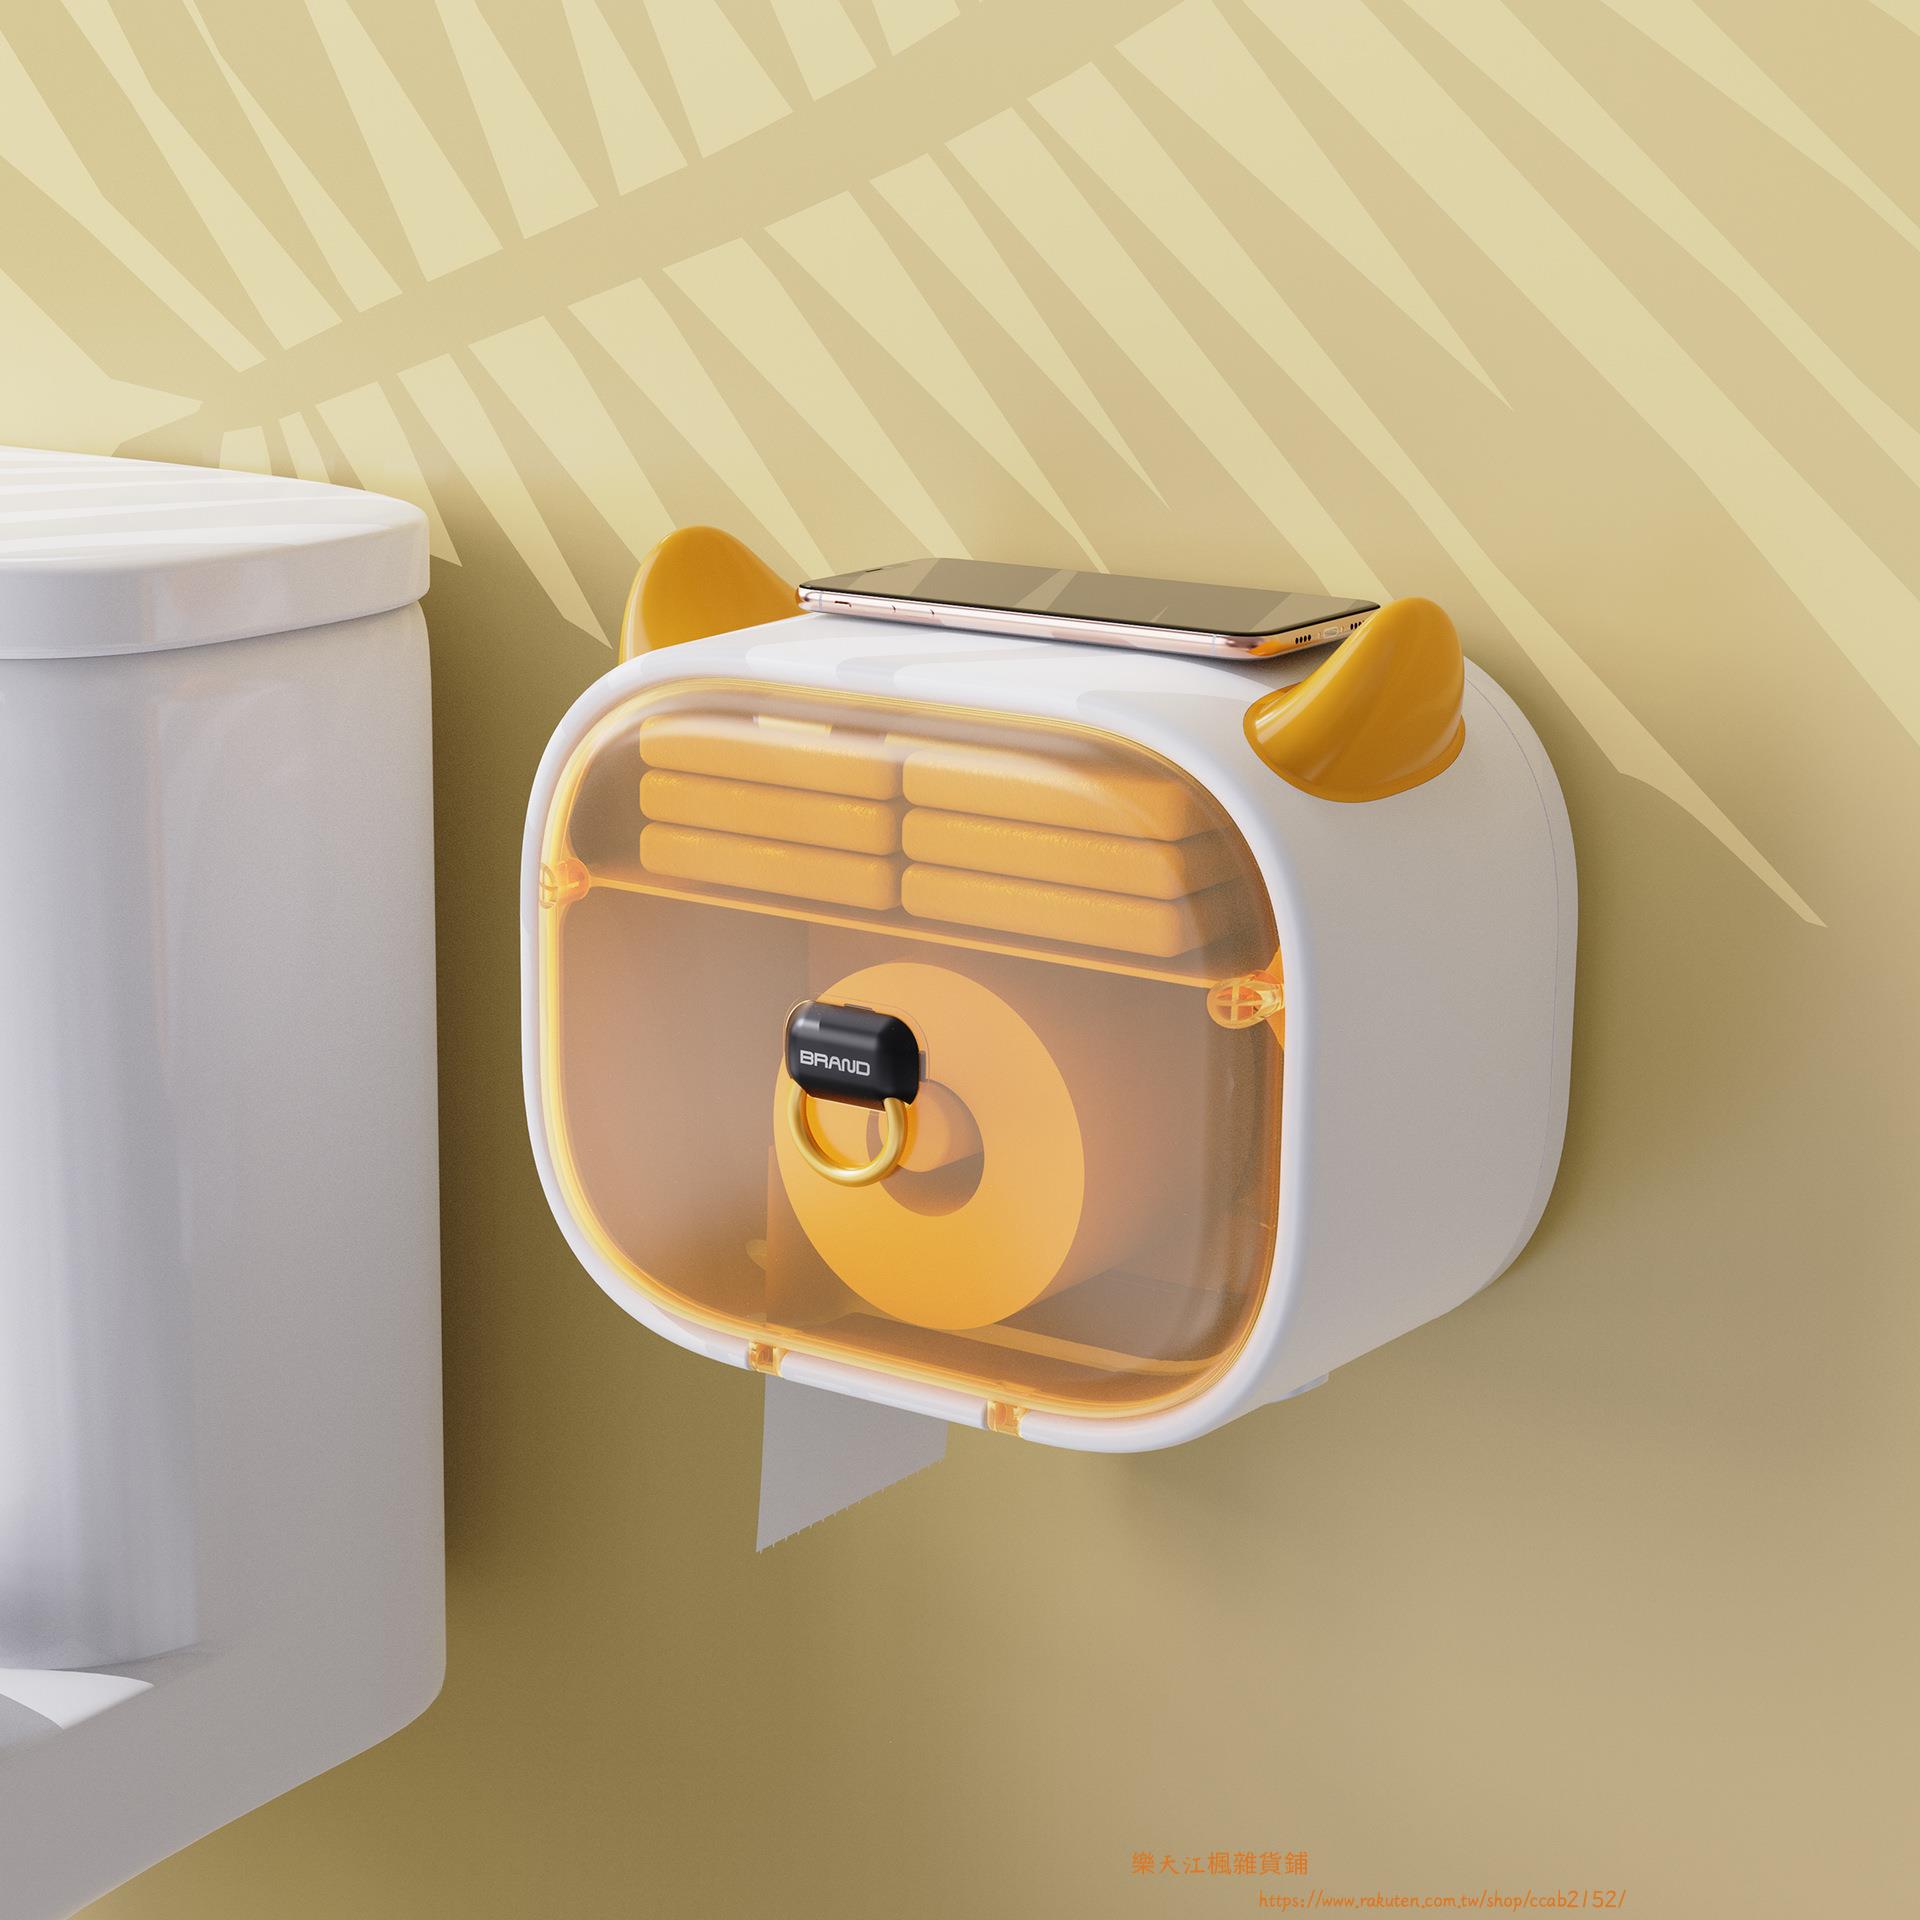 紙巾盒浴室壁掛式防水捲紙收納盒免打孔廁所抽紙盒